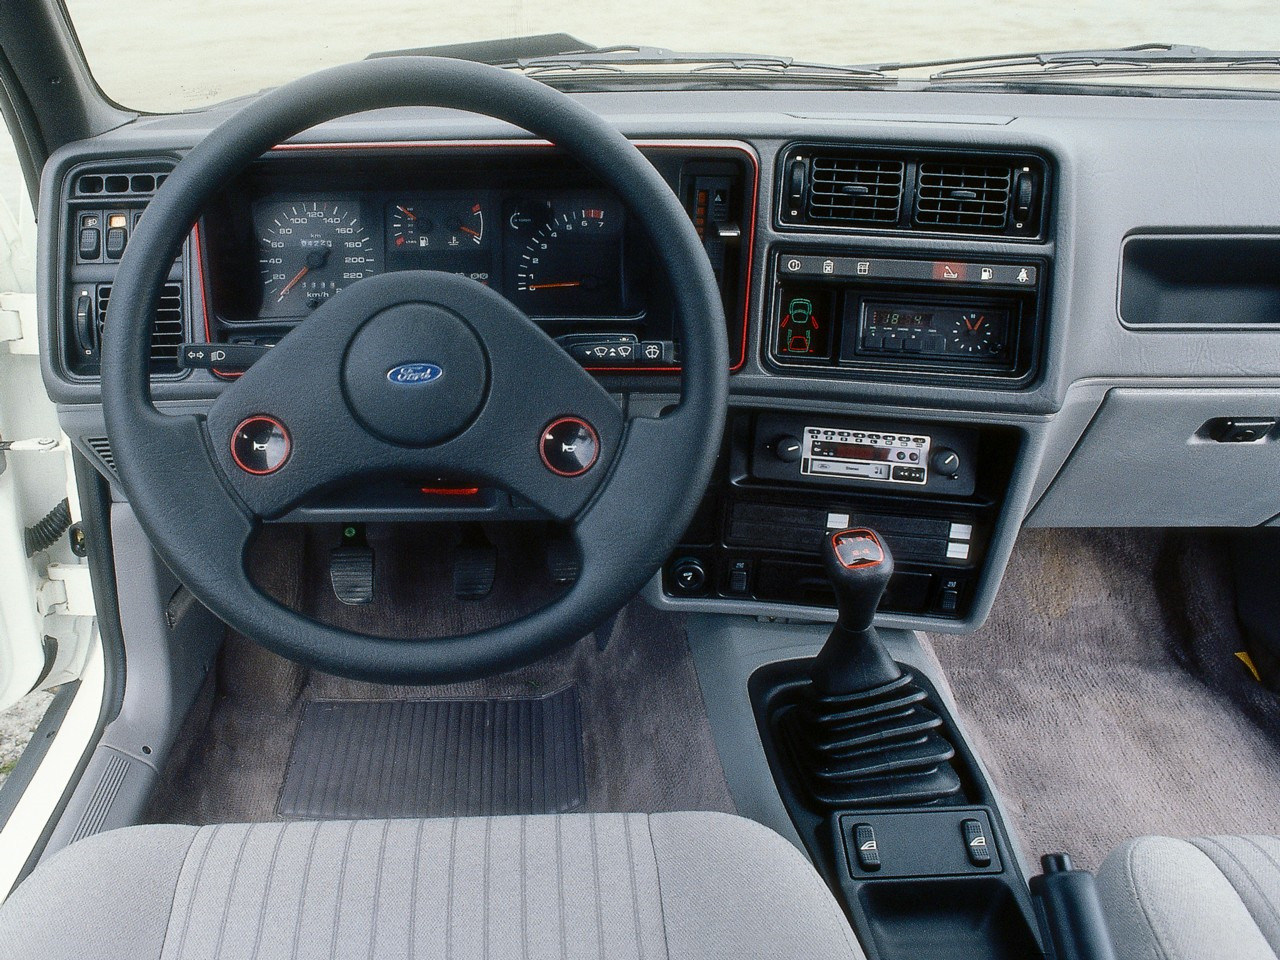 1985 1 1986. Ford Sierra xr4i. Ford Sierra xr4i 1984. Ford Sierra xr4i 1983. Ford Sierra xr4i салон.